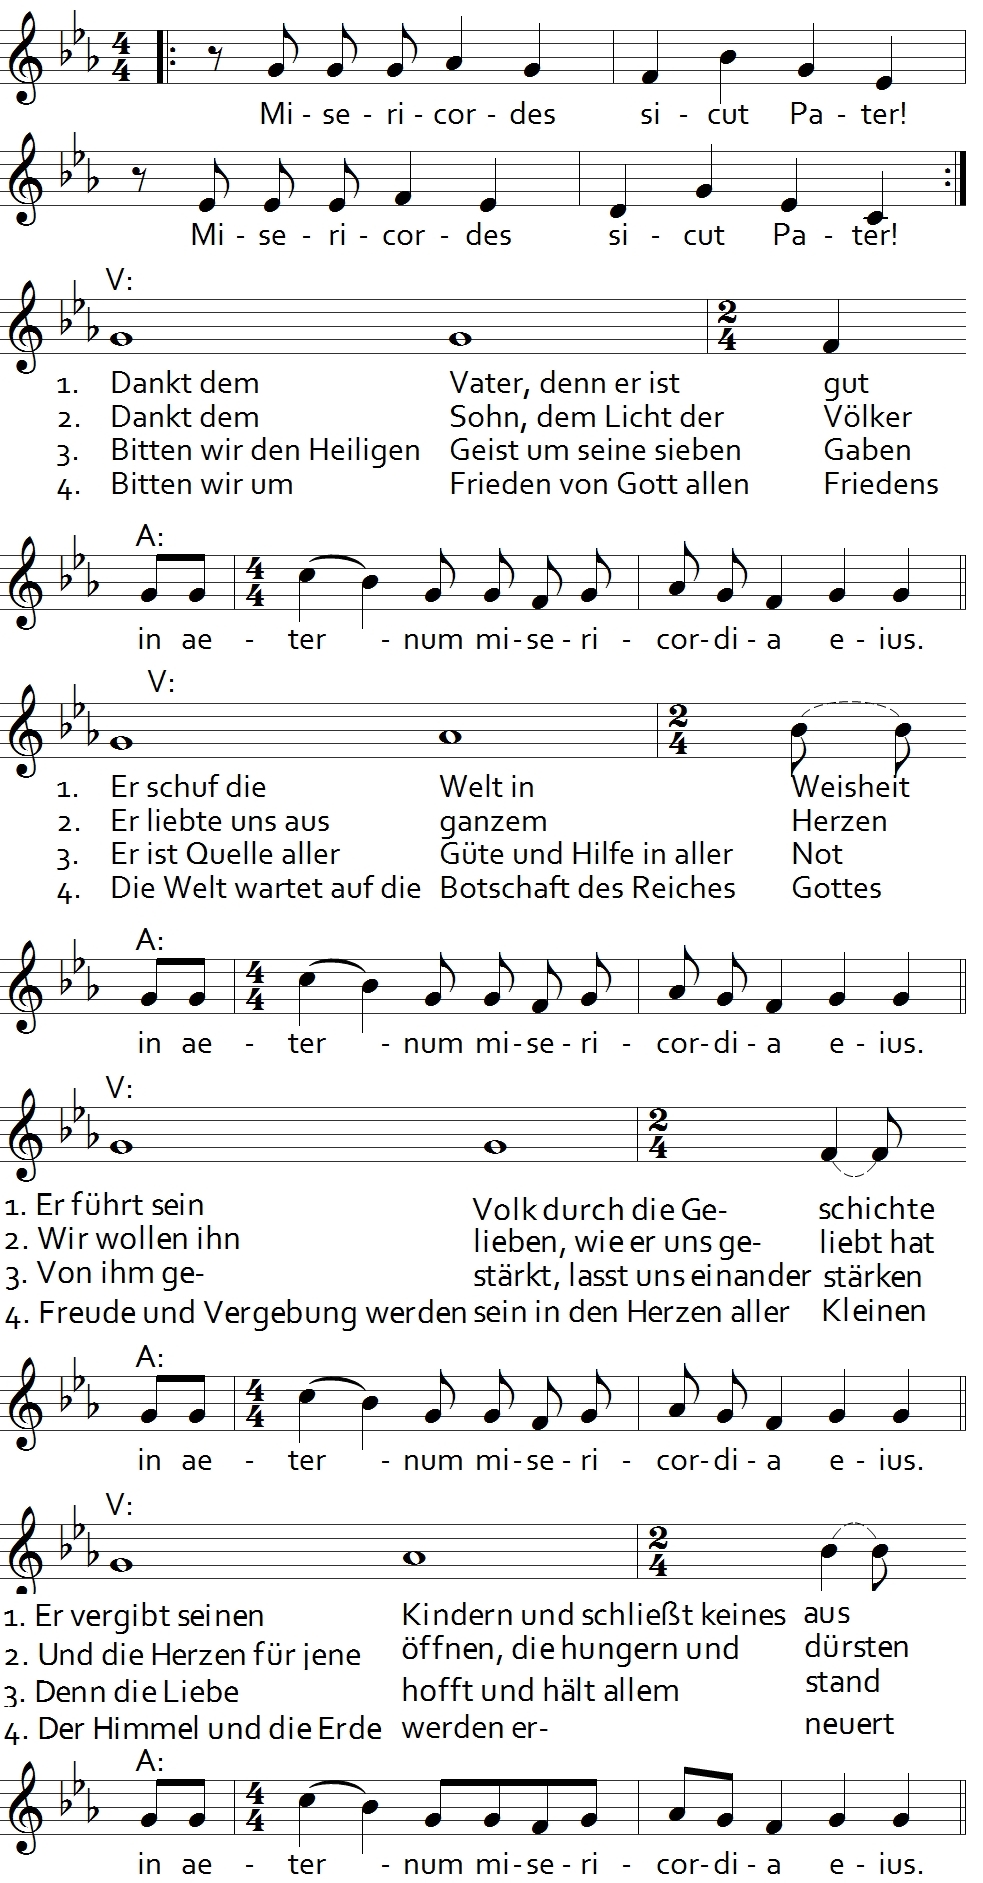 Liedvorschläge Bistum Köln